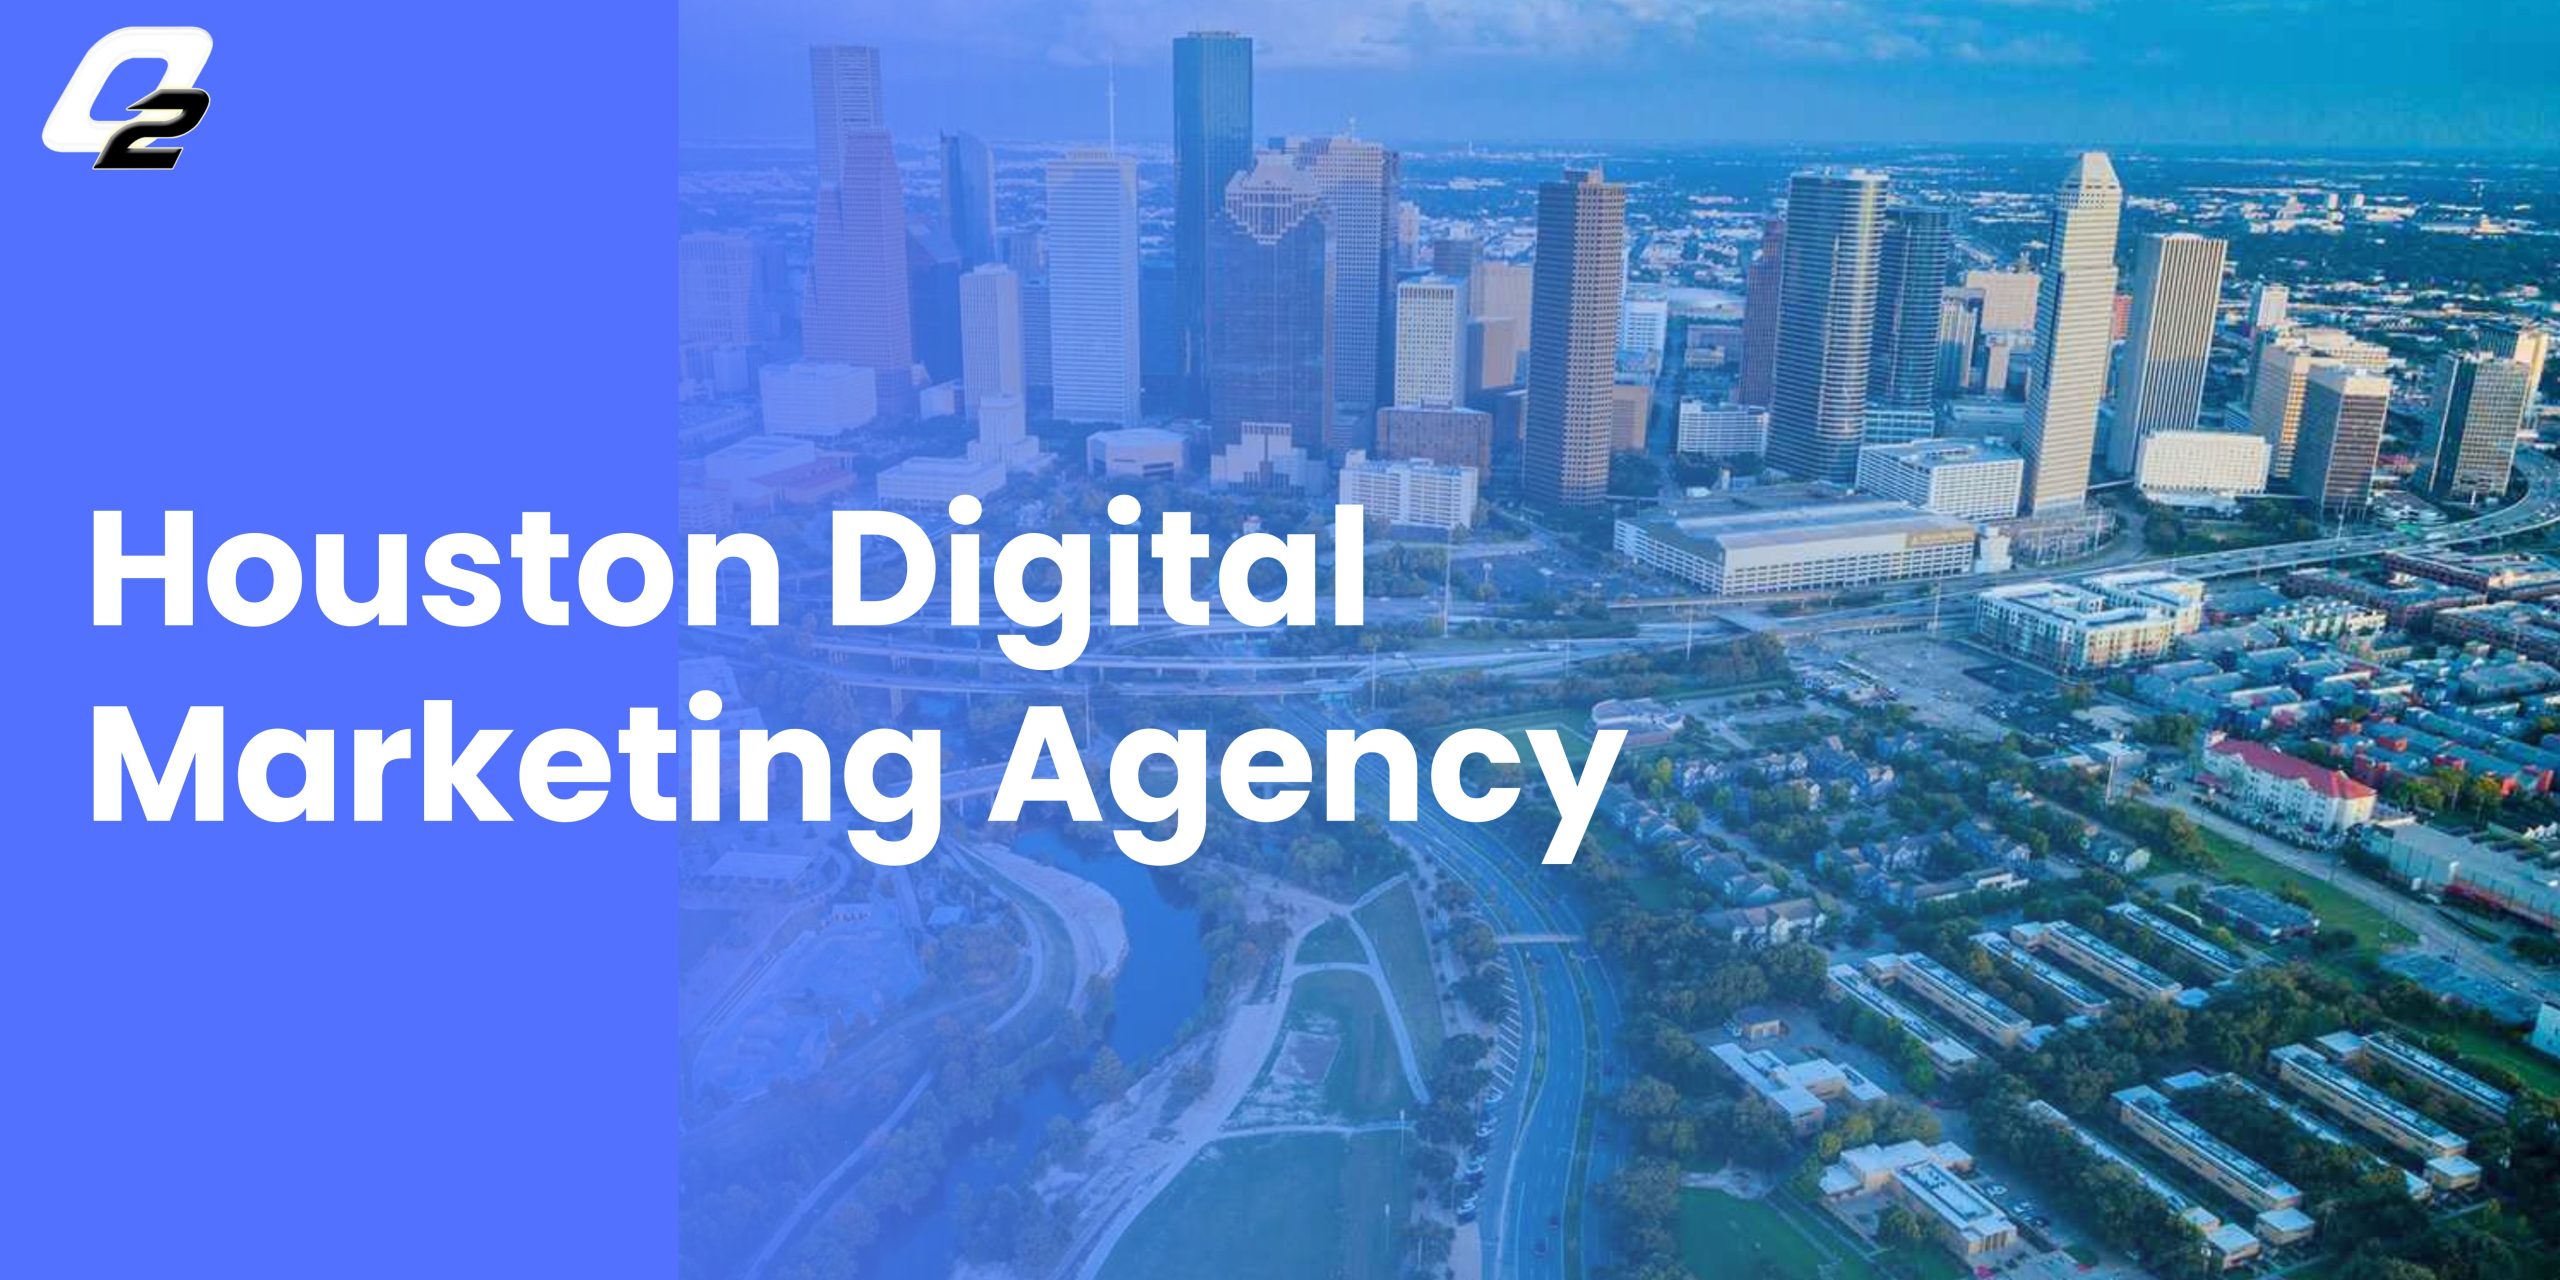 Houston digital marketing agency